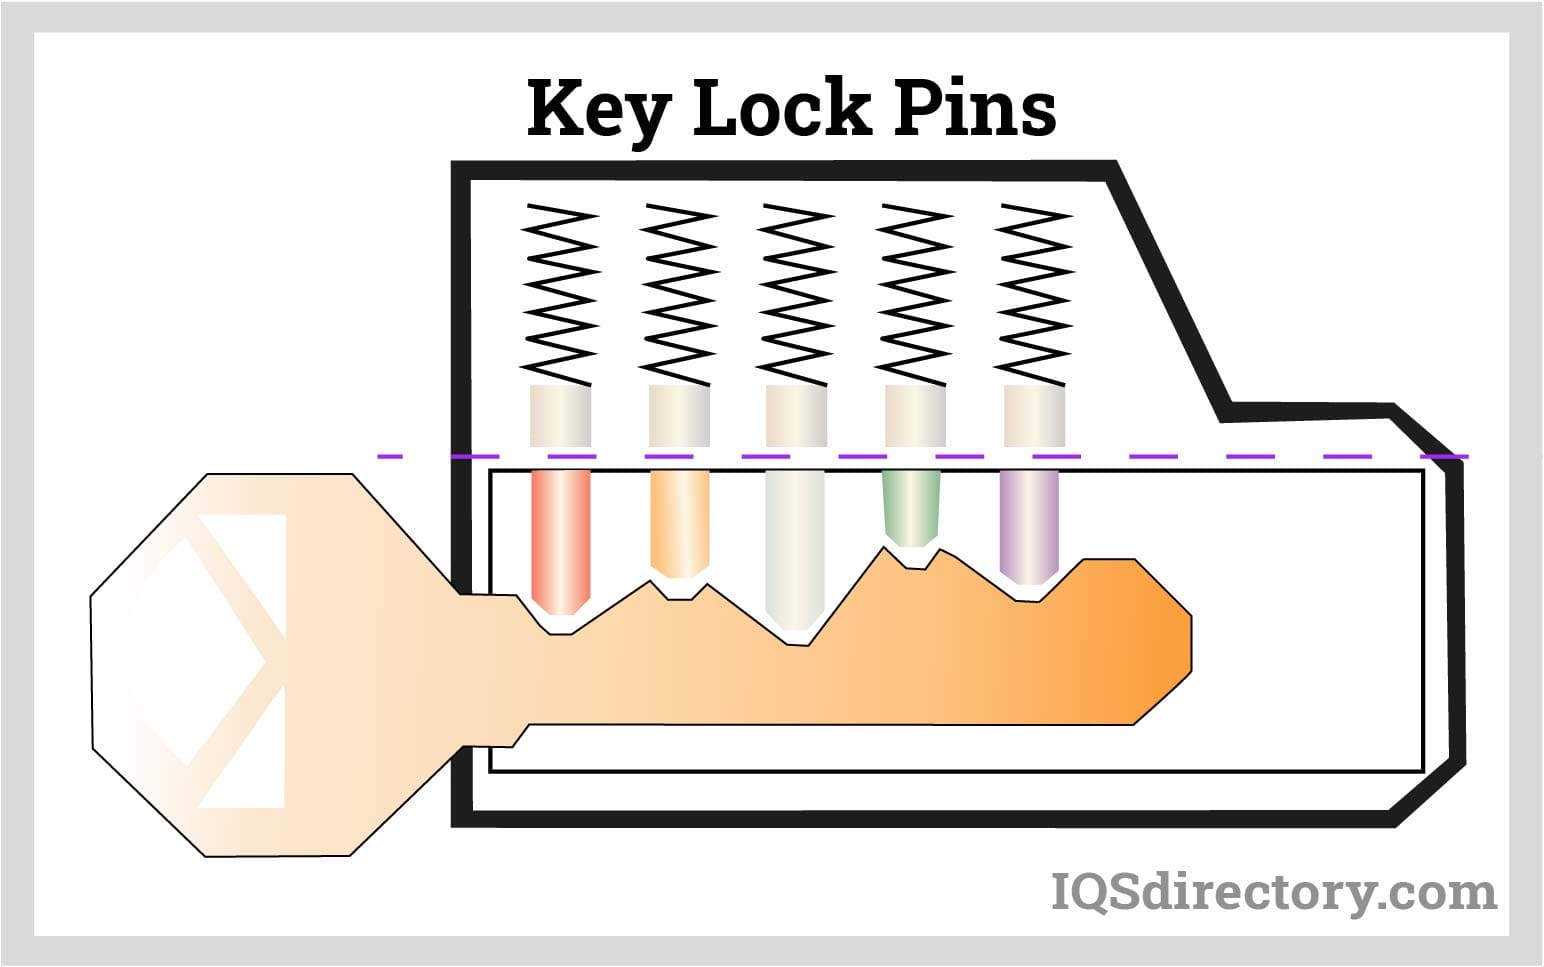 Key Lock Pins